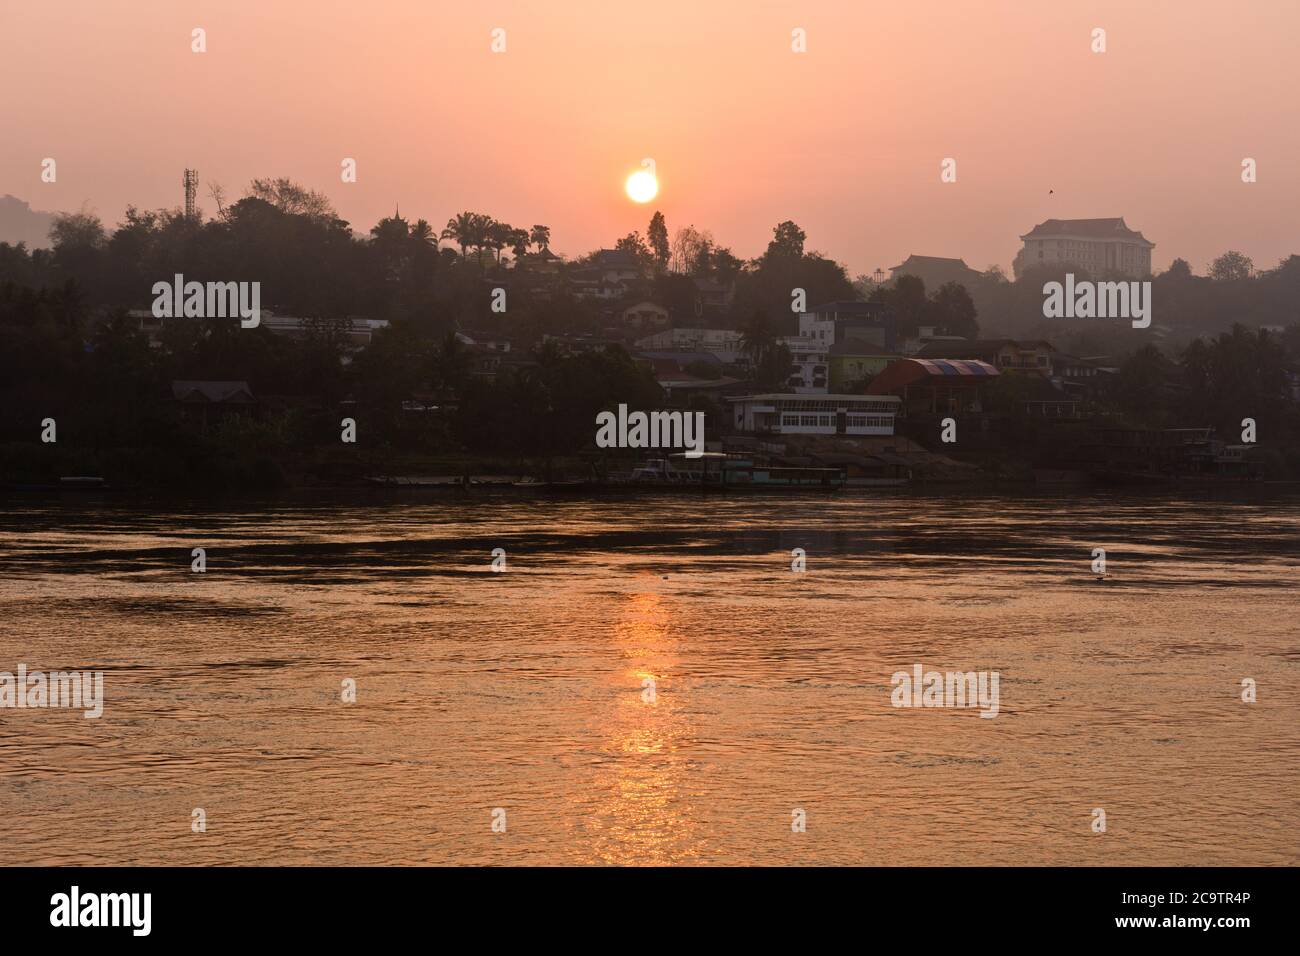 Sunrise Scenery at Mekong River, Chiang Khong, Thailand, Asia Stock Photo